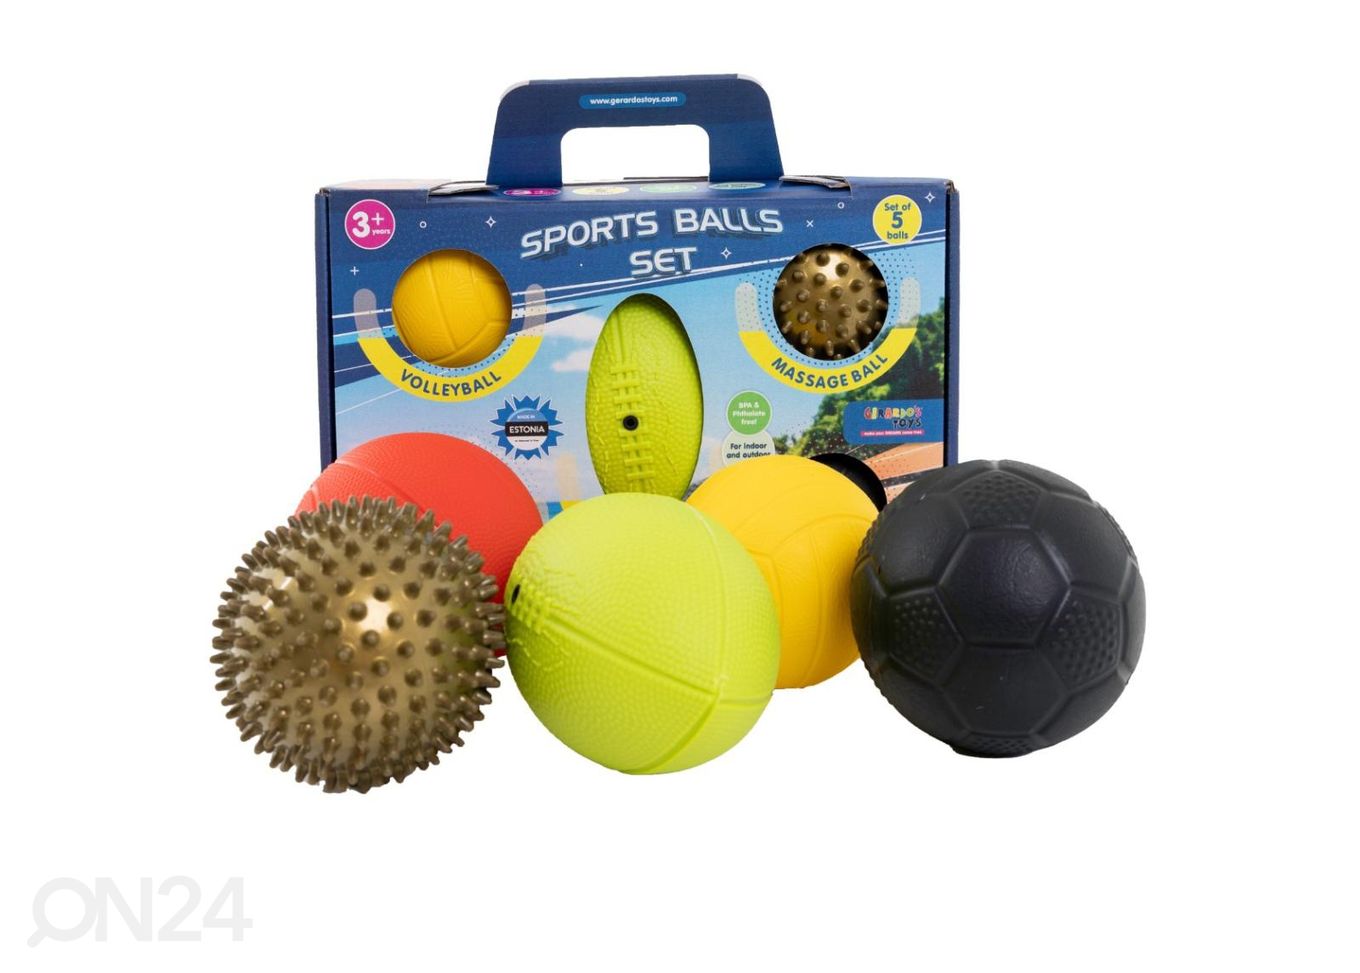 Gerardo's Toys Набор из 5 спортивных мячей увеличить